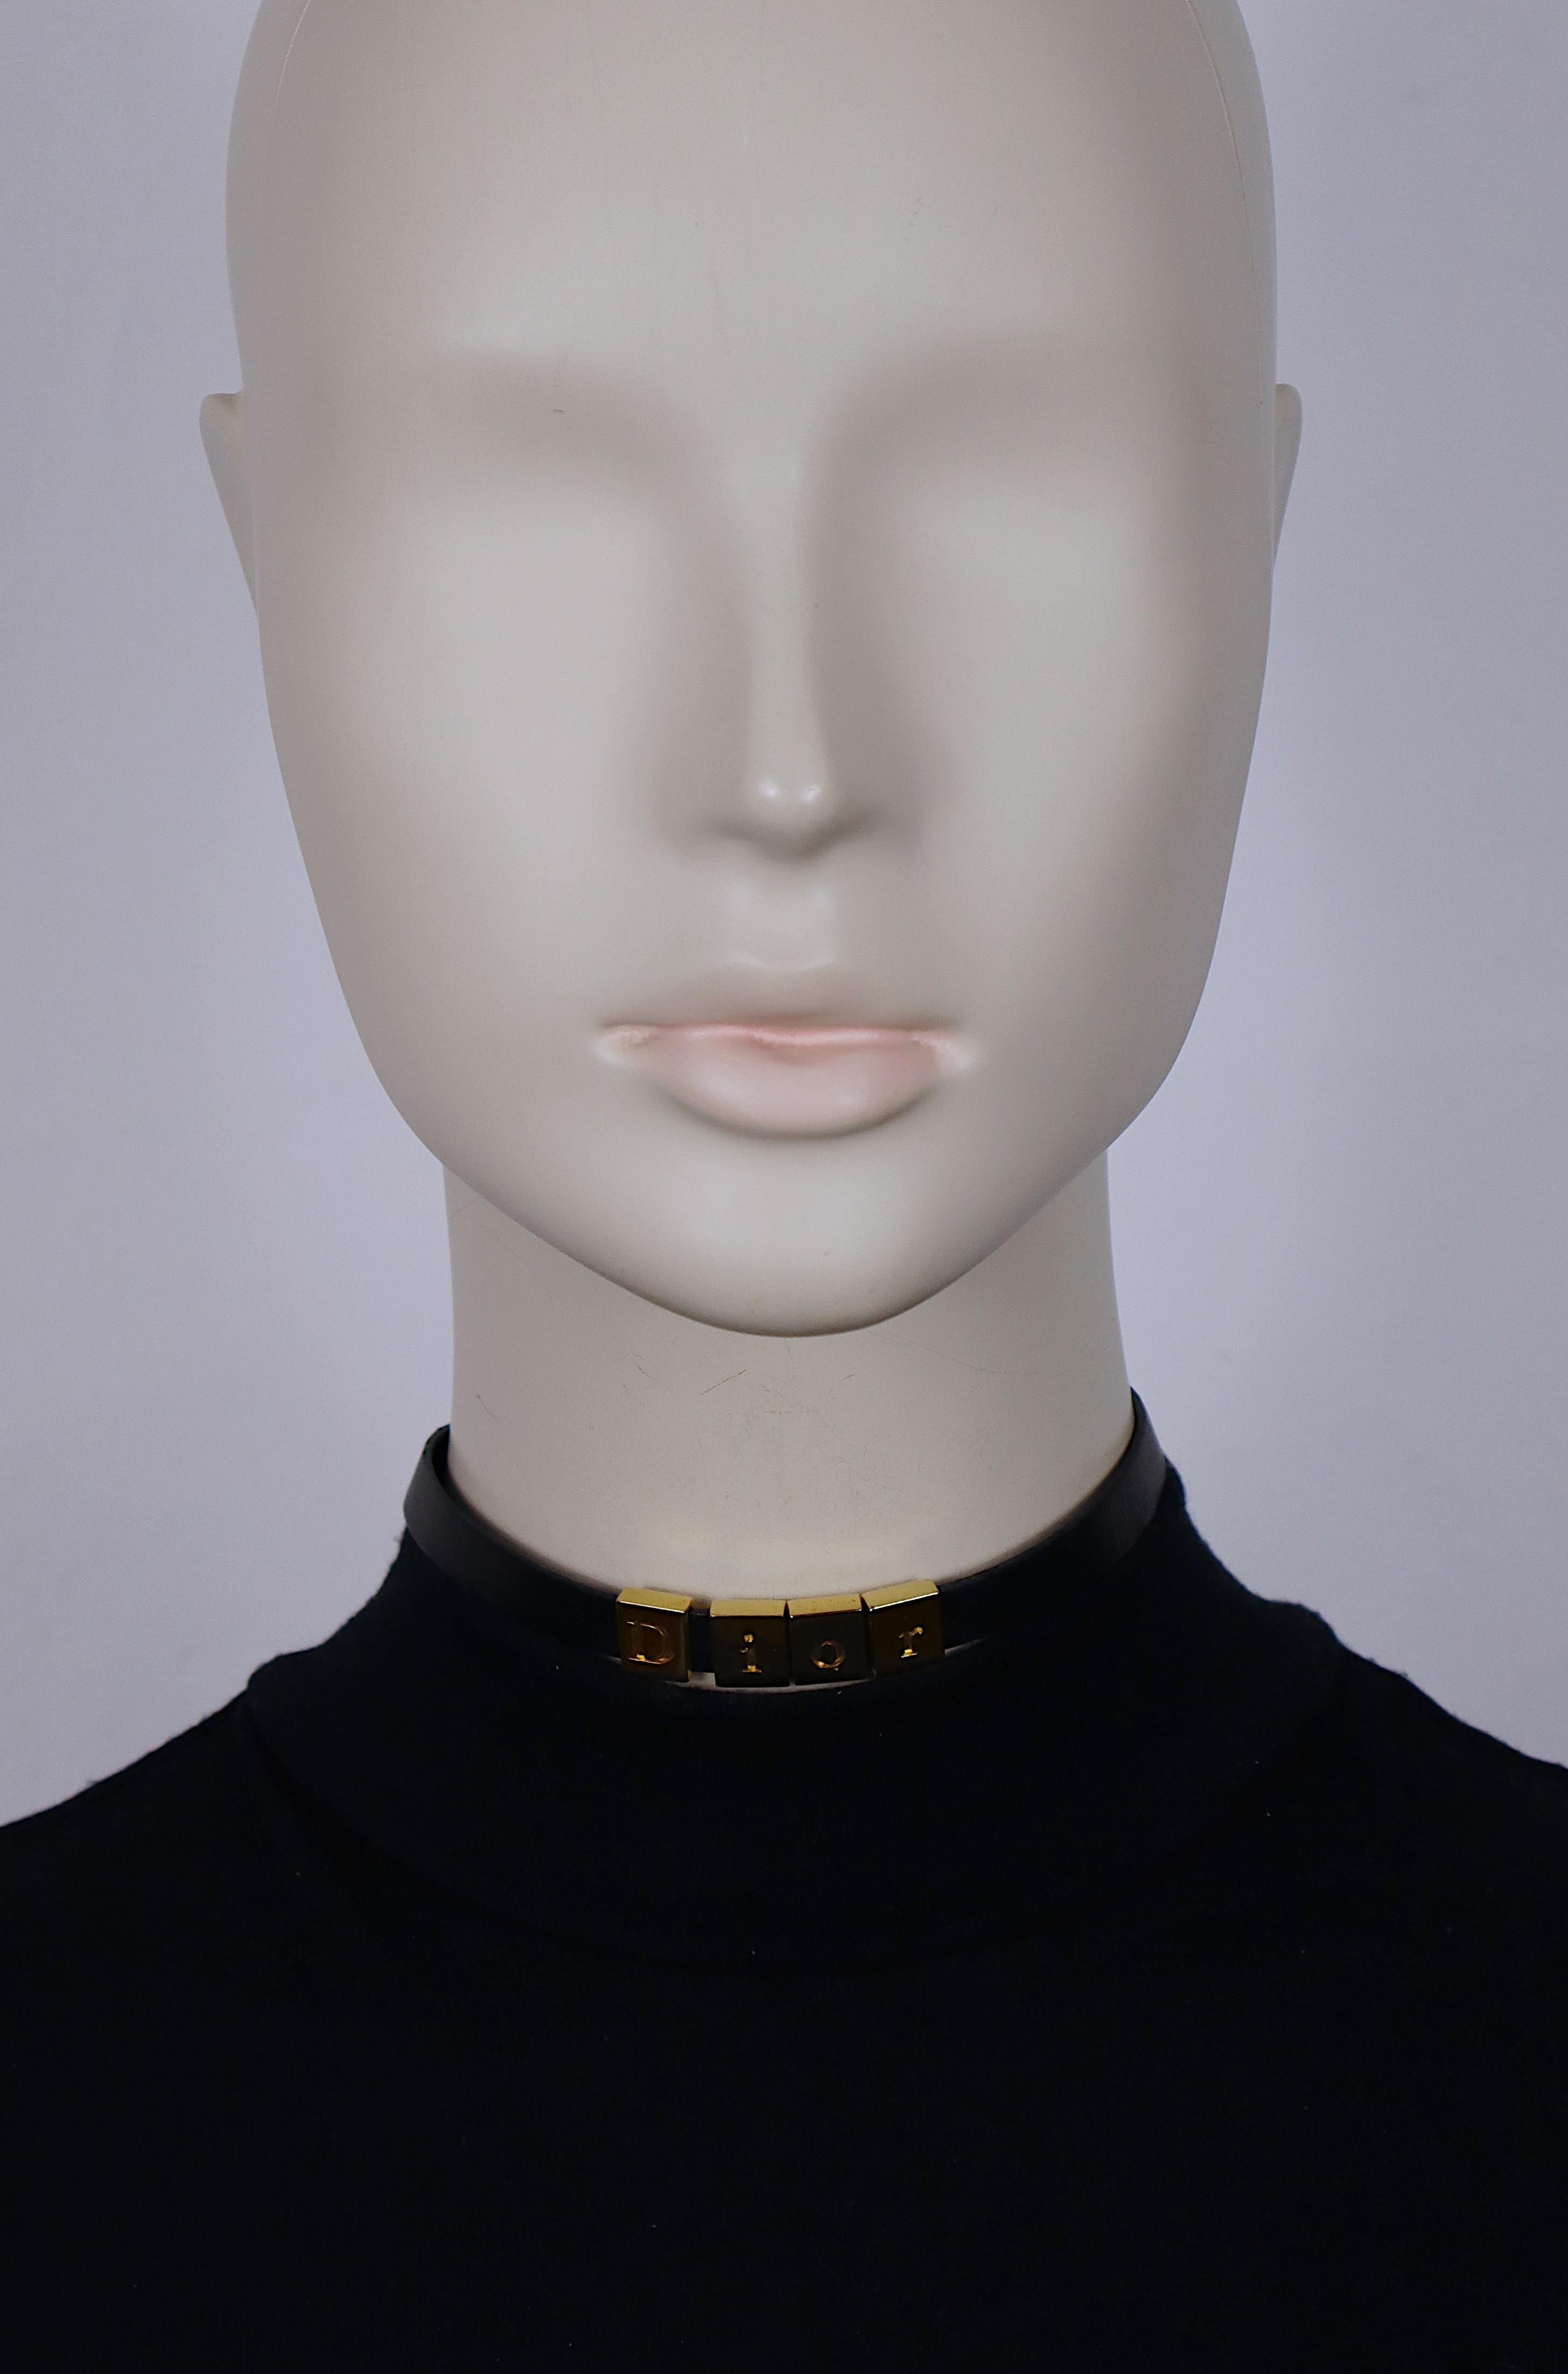 CHRISTIAN DIOR Halskette aus schwarzem Leder mit vier beweglichen goldfarbenen Rechtecken mit der Prägung D I O R.

Karabiner-Verschluss.
Einstellbare Länge.

Geprägter DIOR auf dem CD-Anhänger.

Ungefähre Maße: verstellbare Länge von ca. 30 cm